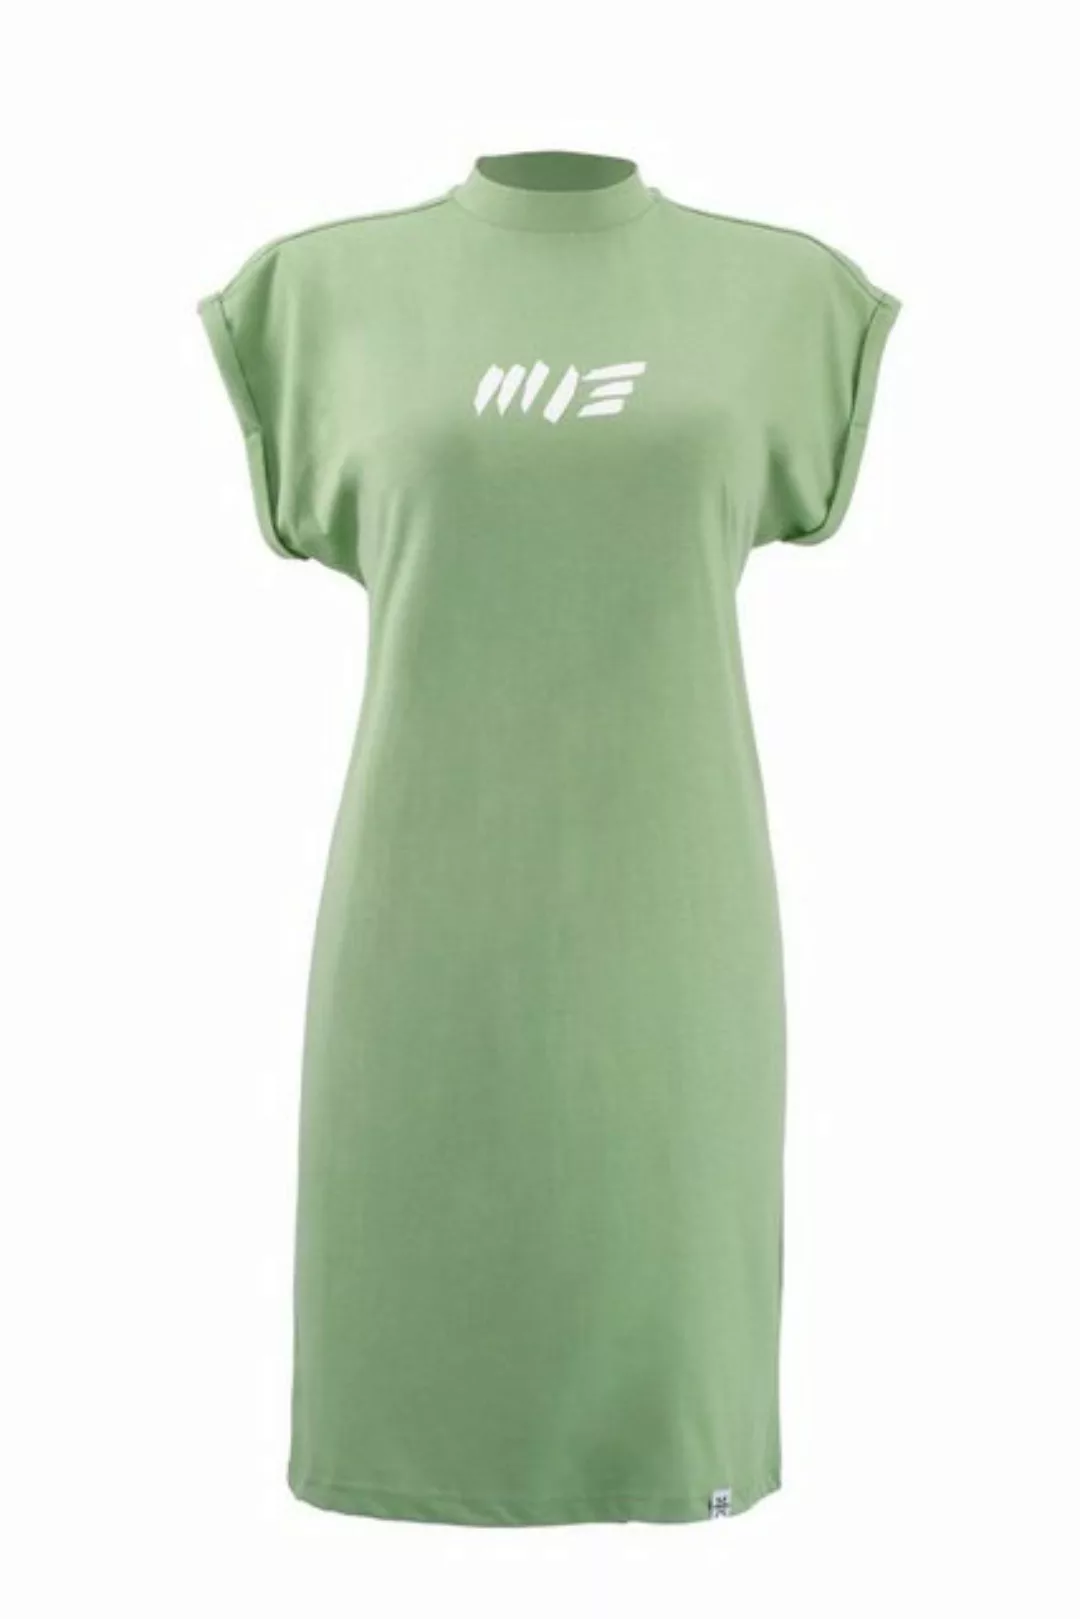 Manufaktur13 Shirtkleid Summer Tee Dress - Sommerkleid, T-Shirt Kleid, Jers günstig online kaufen